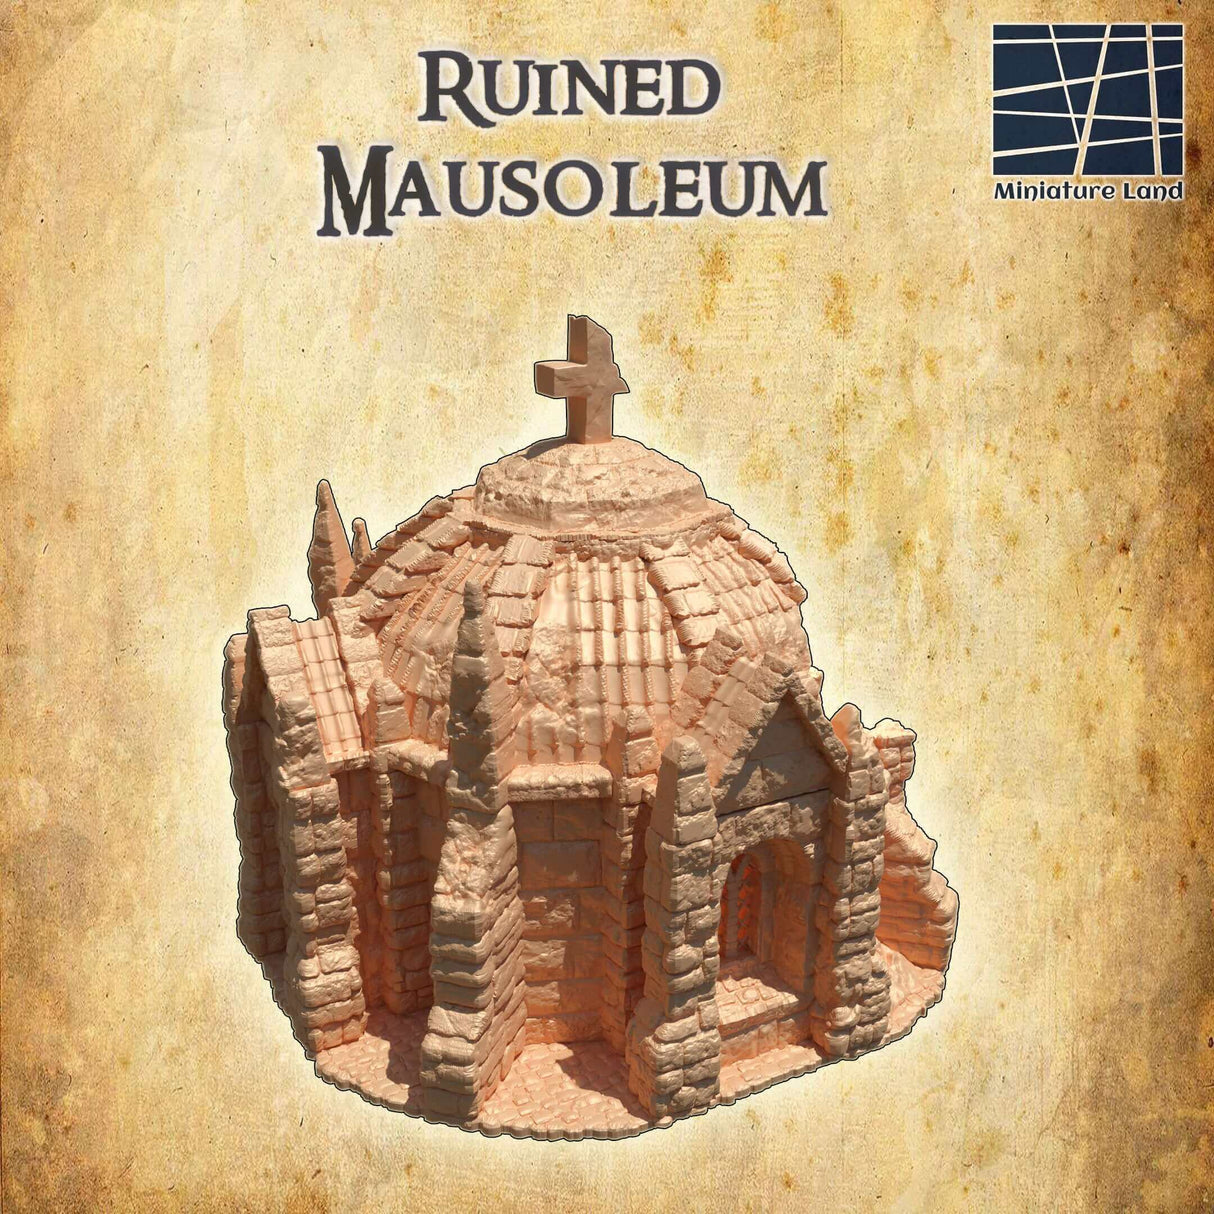 FDM-gedrucktes Zerstörtes Mausoleum von Miniature Land